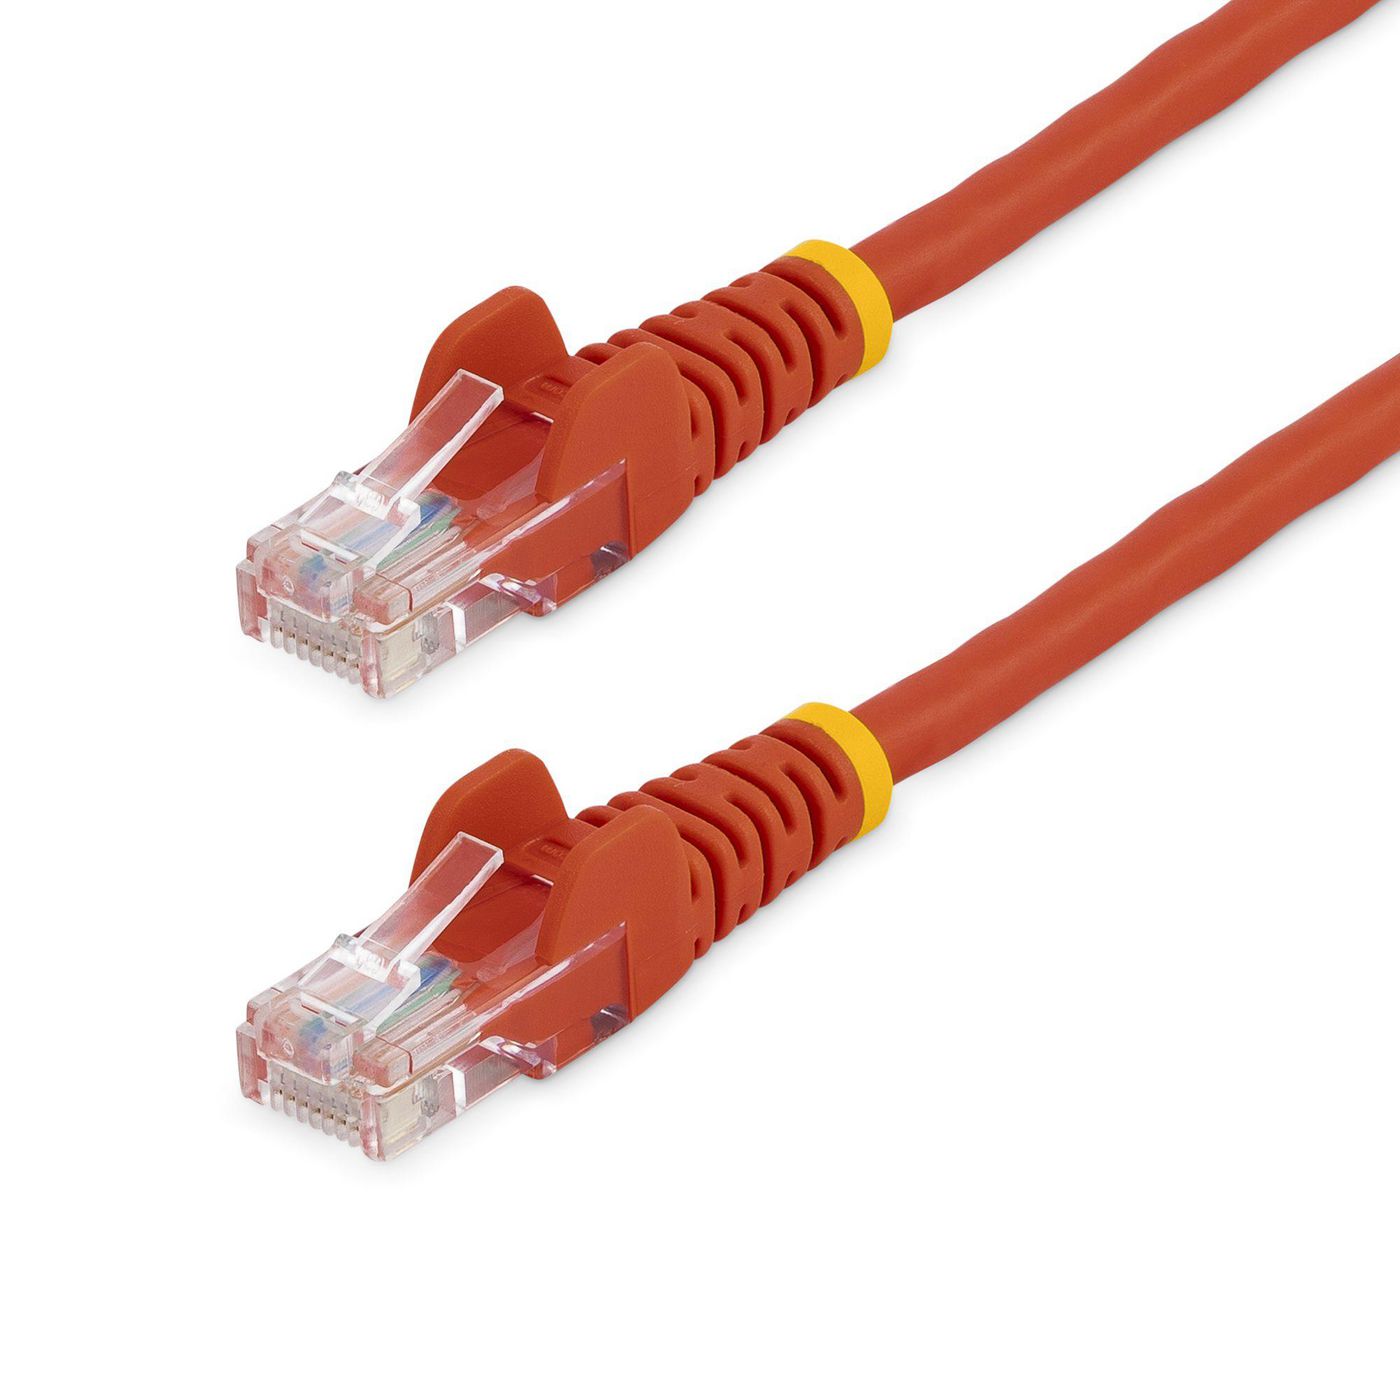 STARTECH.COM 5m Cat5e Ethernet Netzwerkkabel Snagless mit RJ45 - Cat 5e UTP Kabel - Rot